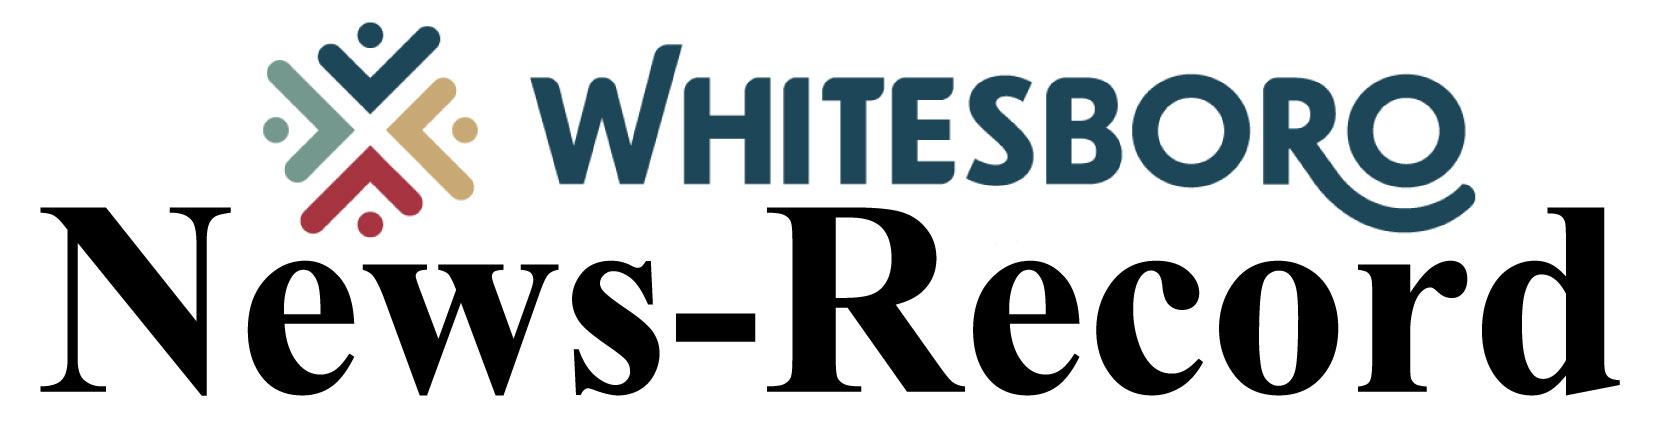 Whitesboro News-Record